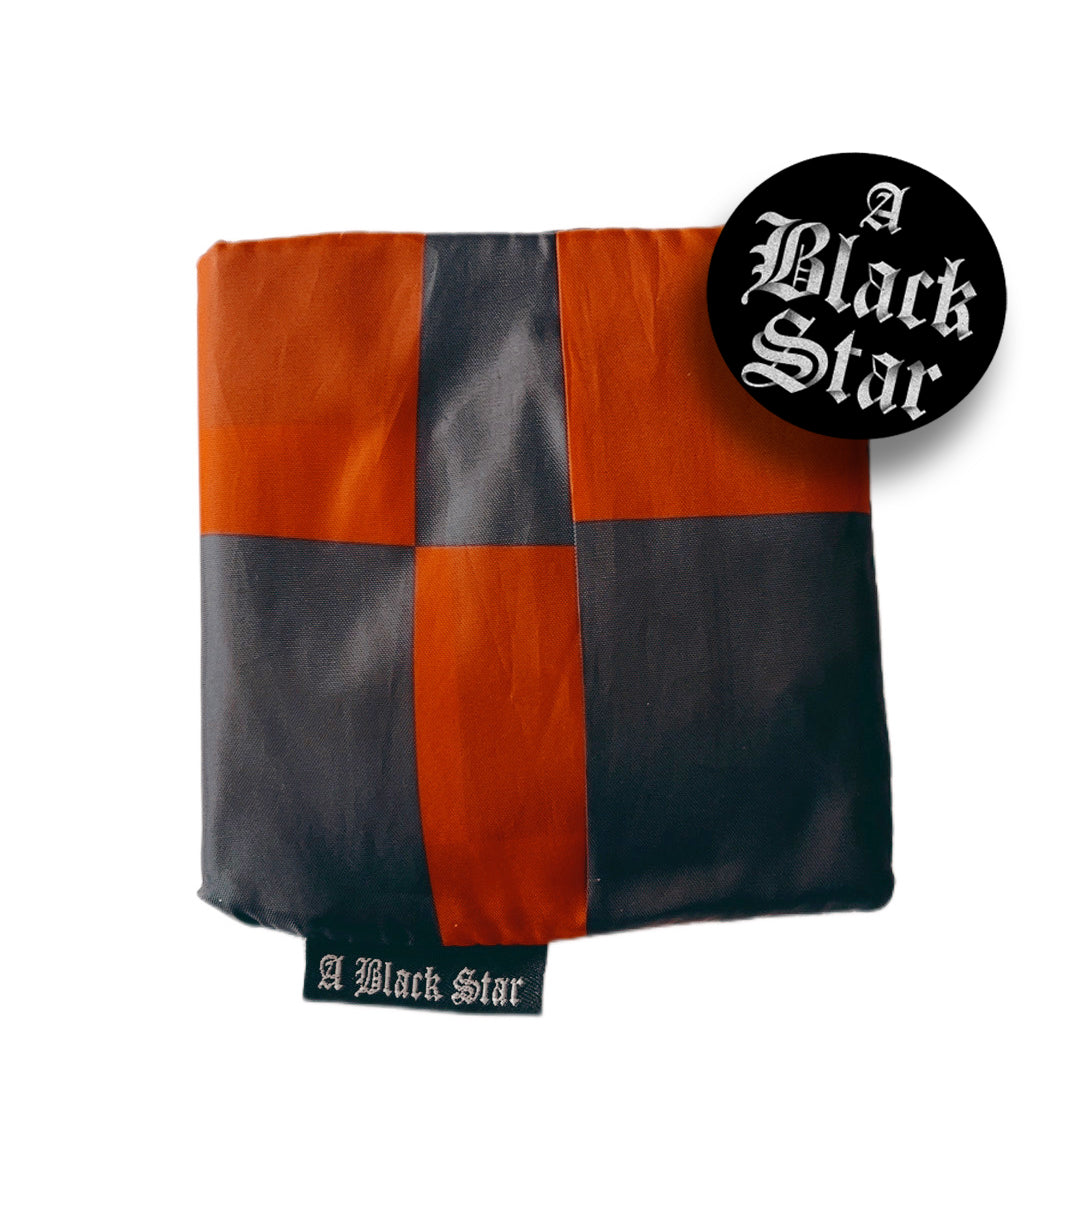 Orange/Black Checkerd Reusable Shopping Bag